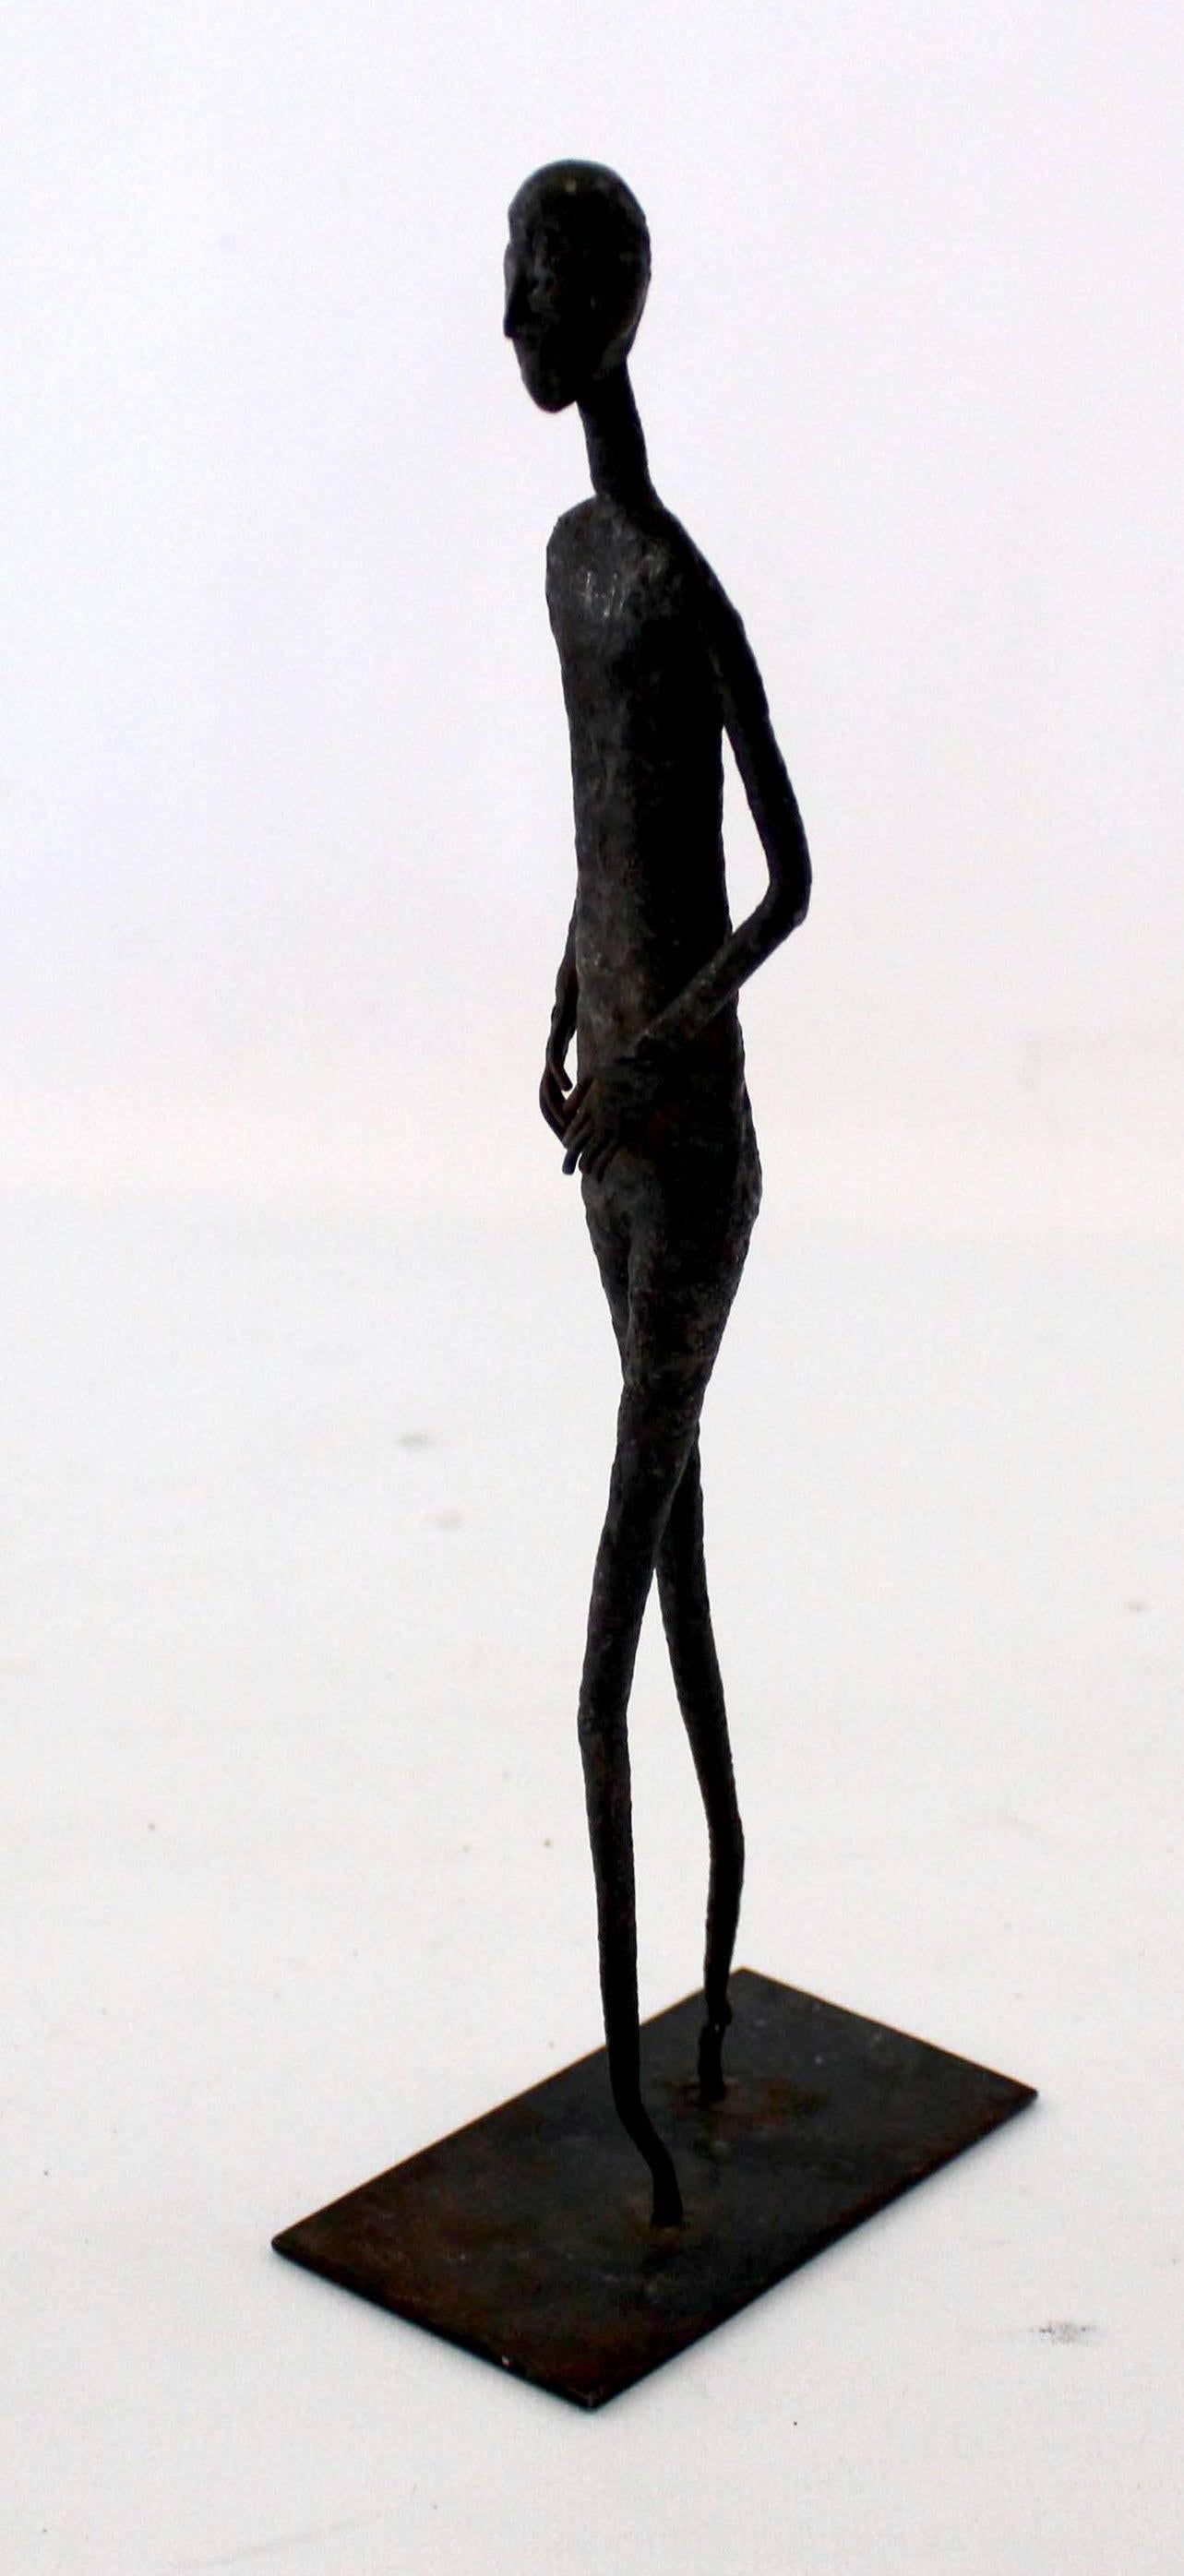 Small Brutalist steel statue, reminiscent of Giacometti, circa 1970.